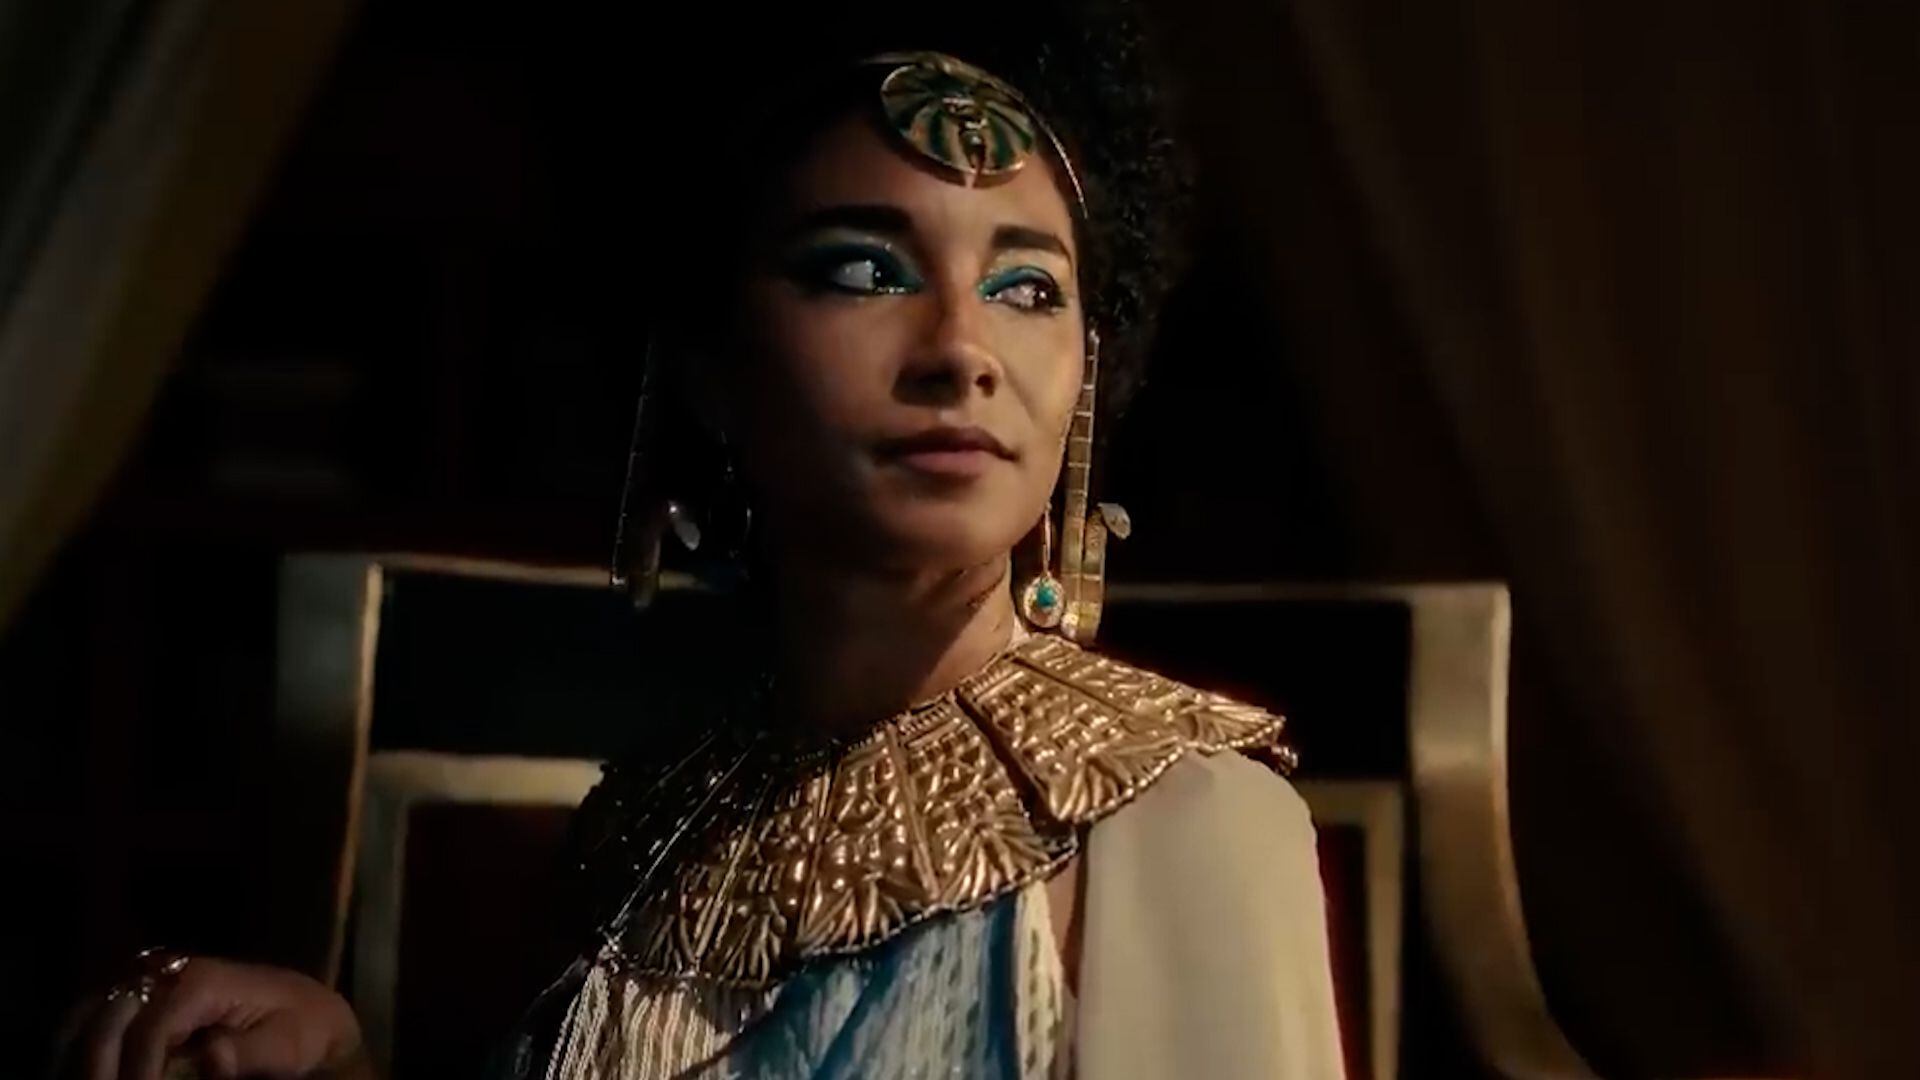 James, la actriz que interpreta a Cleopatra en el docudrama, ha sido objeto de insultos racistas desde que se publicó el tráiler